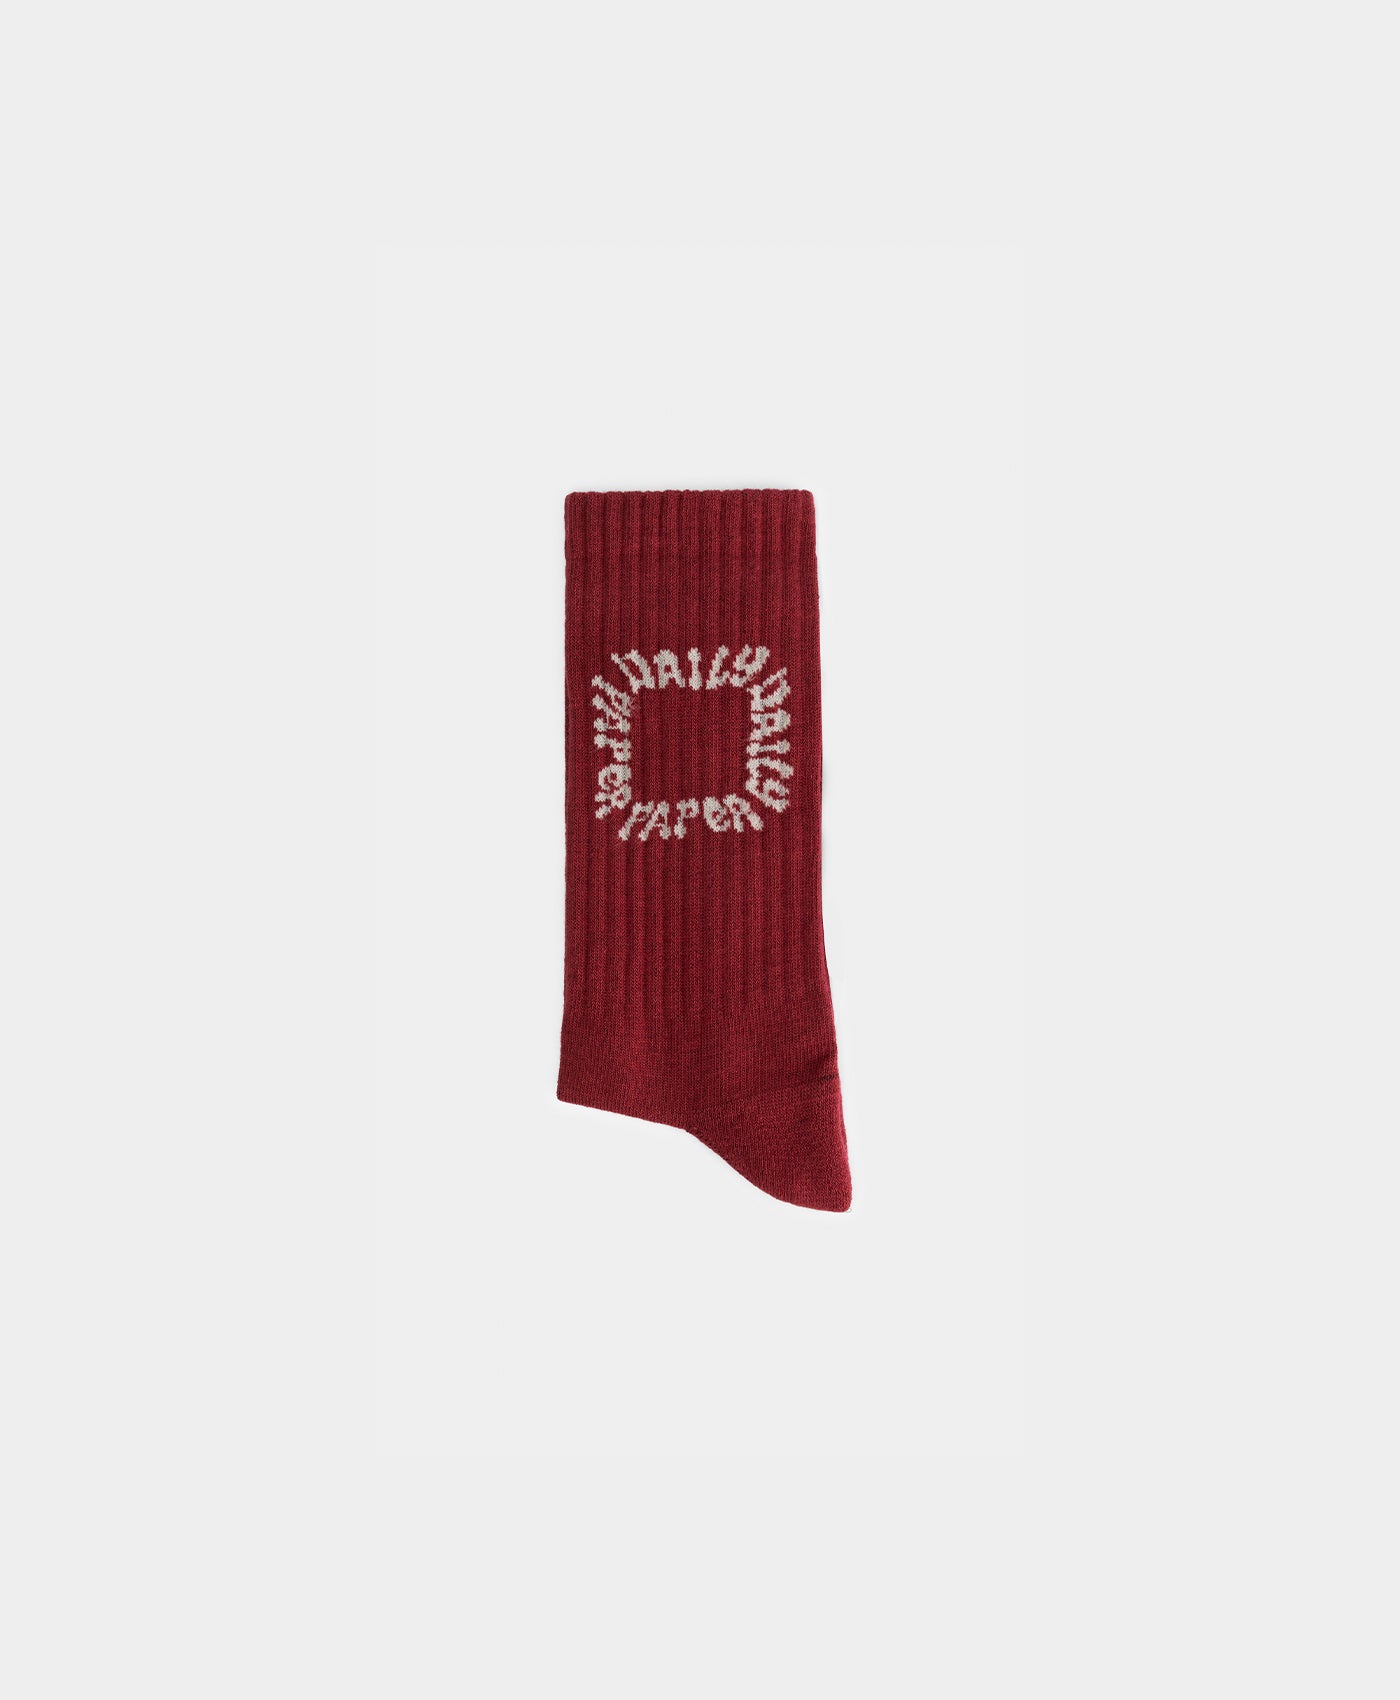 DP - Cabernet Red Pape Socks - Packshot - Rear